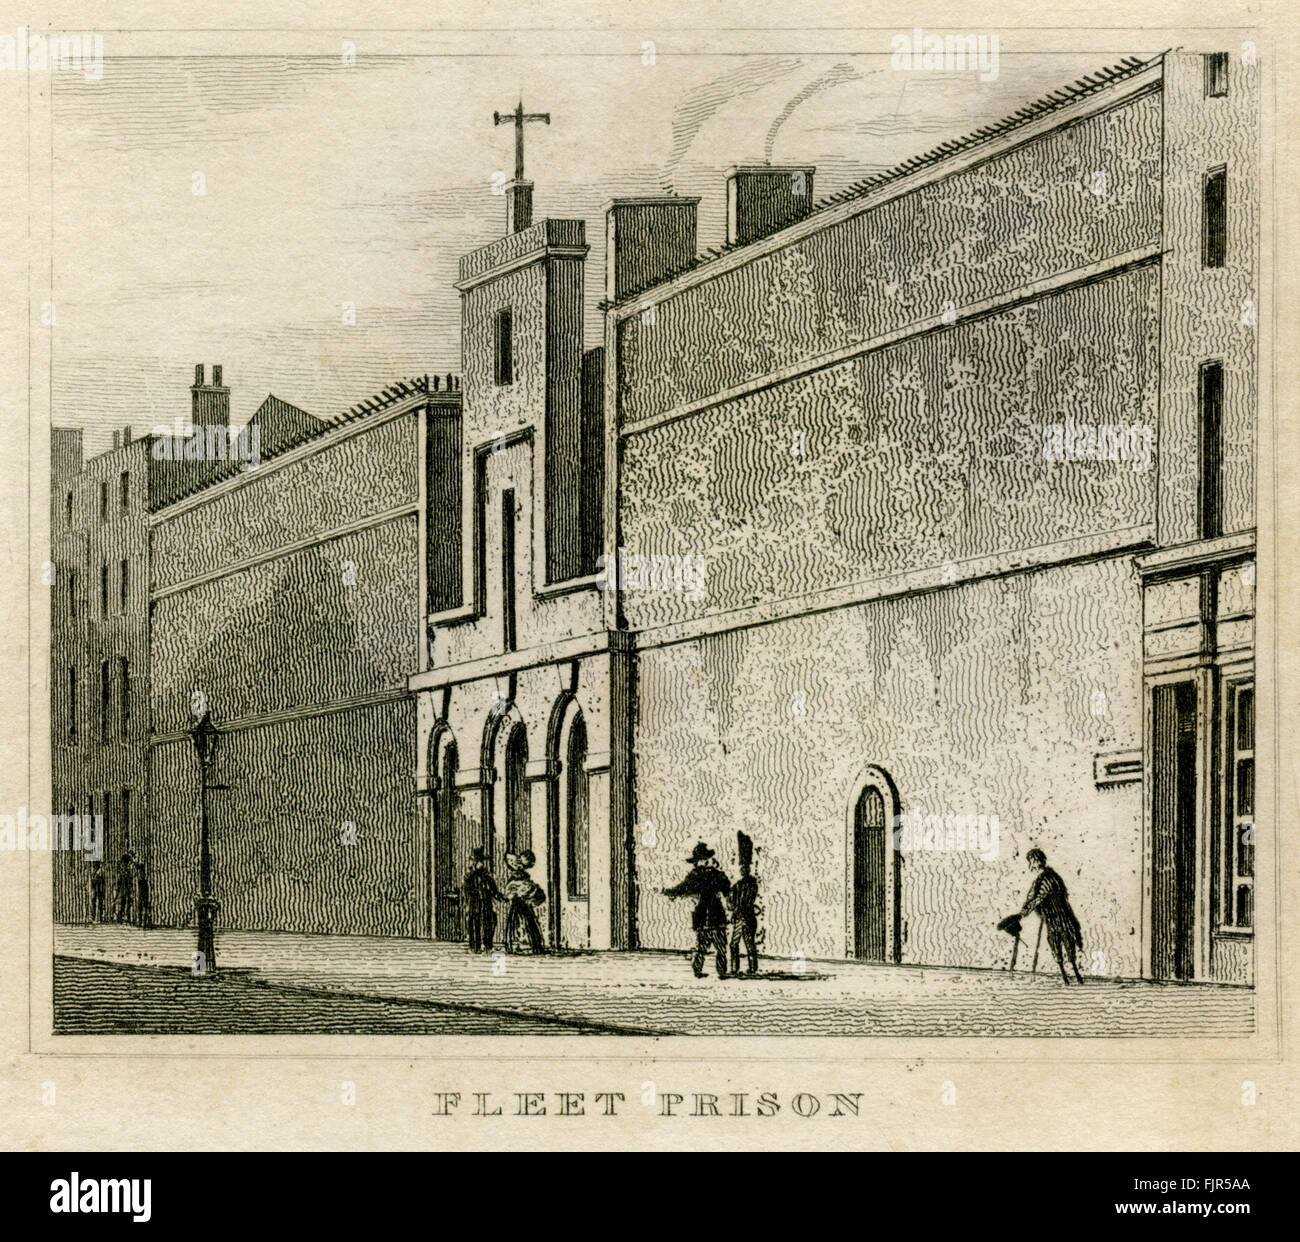 Fleet Prison, London 1853. Erbaut im Jahre 1780, nachdem das alte Gebäude von Randalierern zerstört wurde. Stockfoto